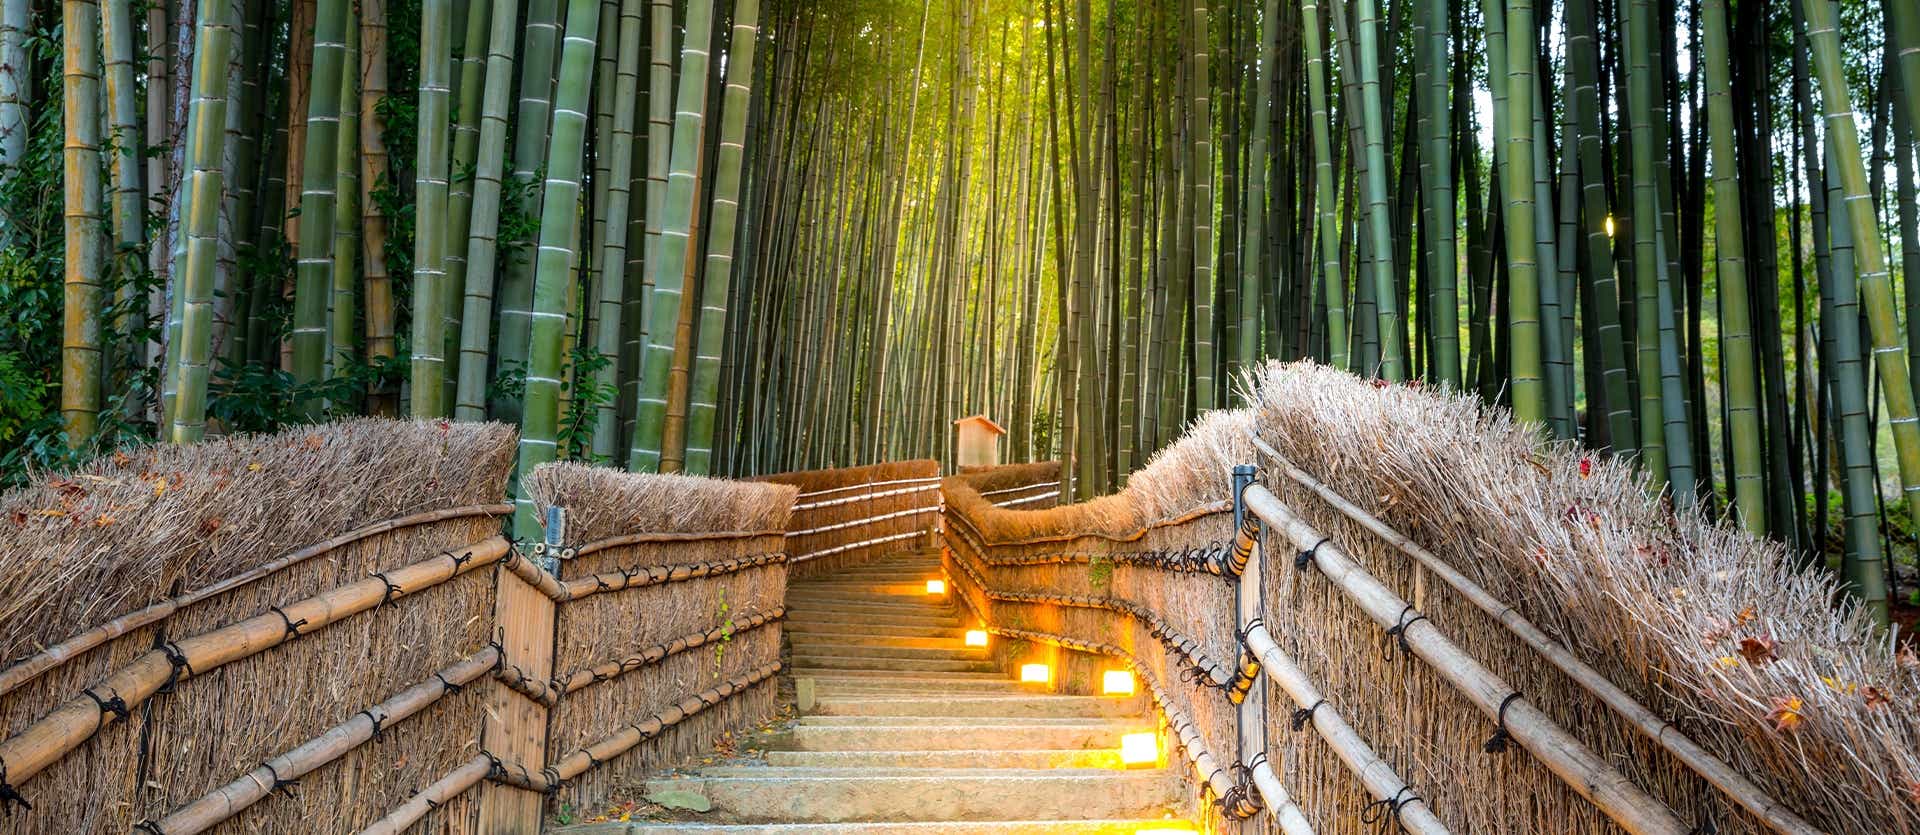 Bamboo Forest <span class="iconos separador"></span> Kyoto